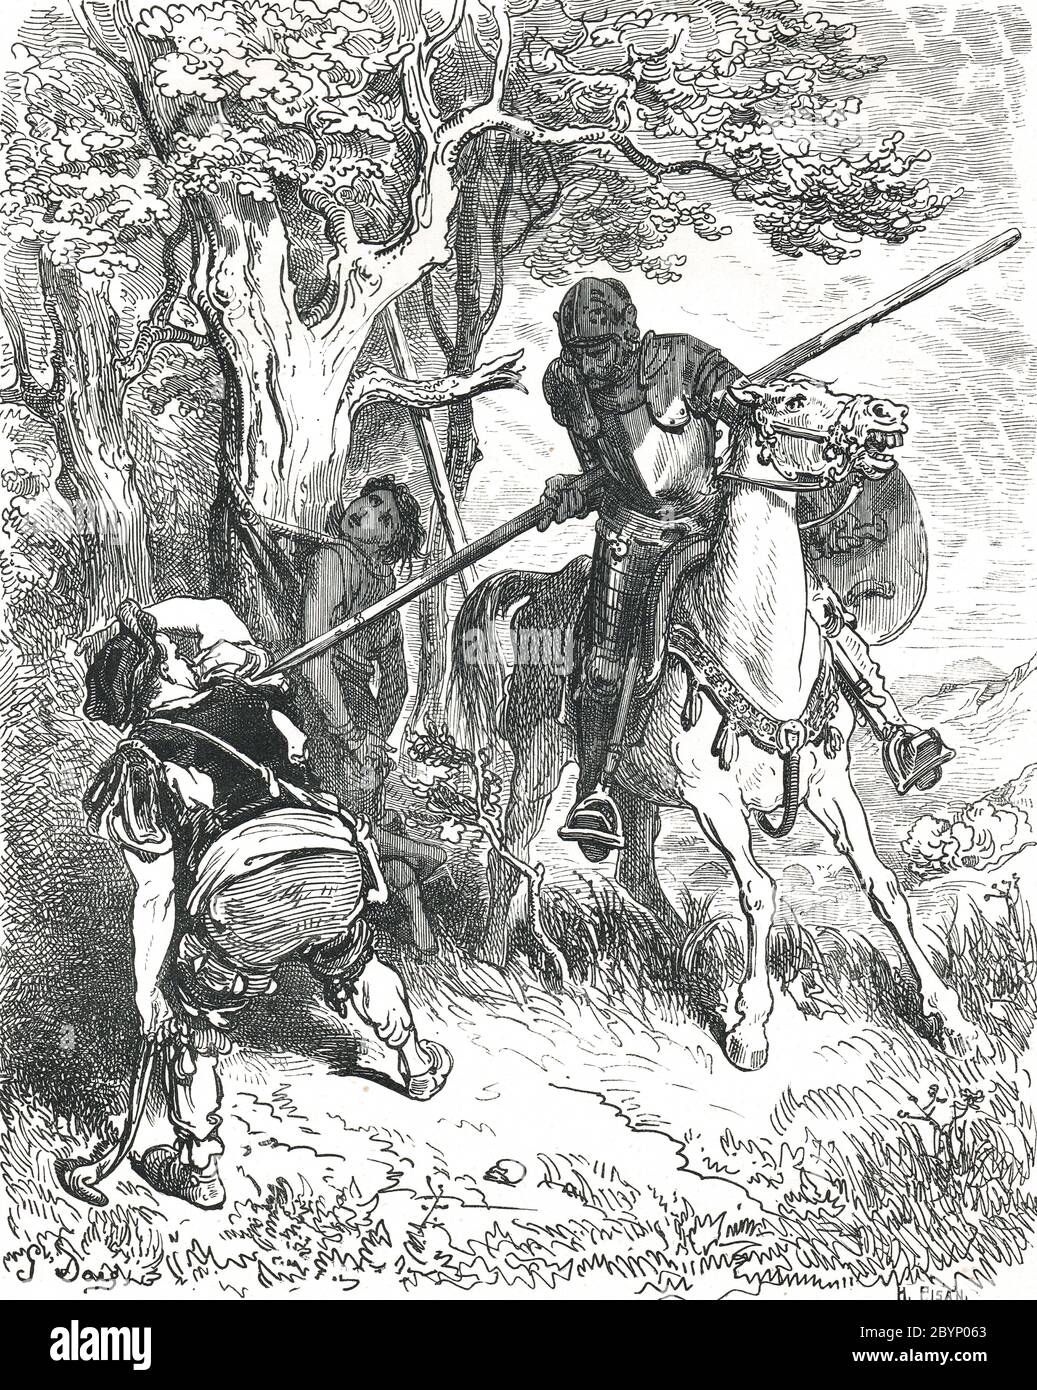 Don Quijote liberando a un joven llamado Andrés, atado a un árbol, siendo golpeado por su maestro. Ilustración de Gustave Dore Foto de stock